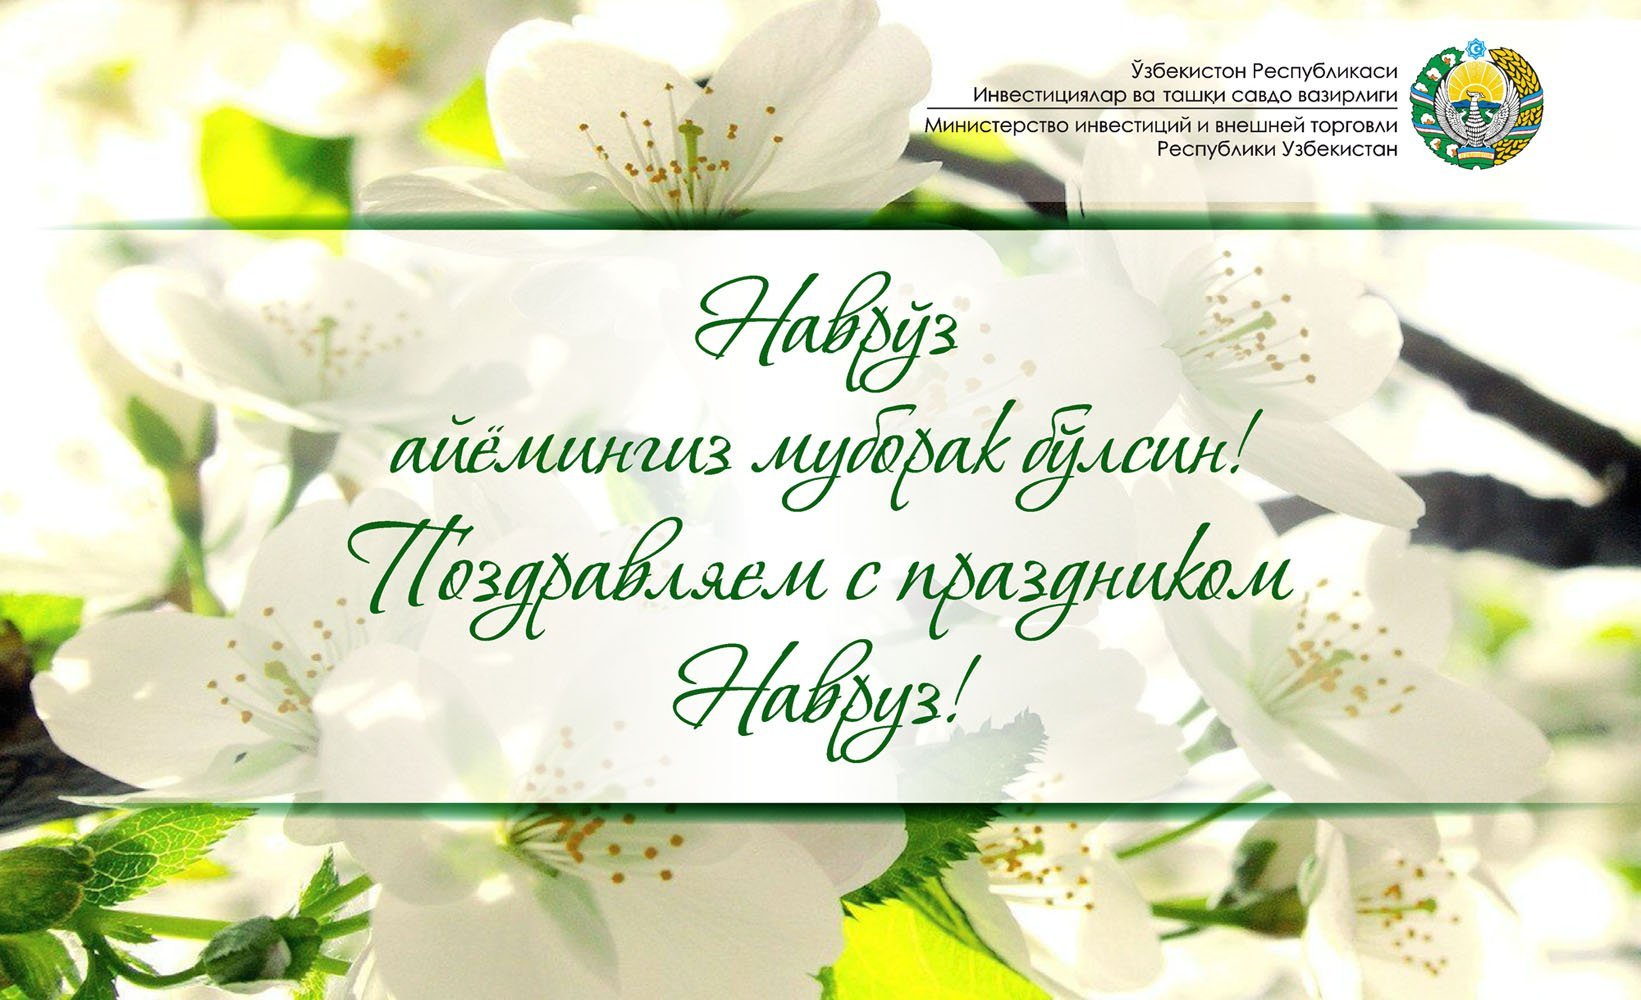 Поздравление с наврузом на таджикском языке. Навруз открытки. Навруз поздравление картинки. Открытка с праздником Науруз. С праздником Навруз поздравления.